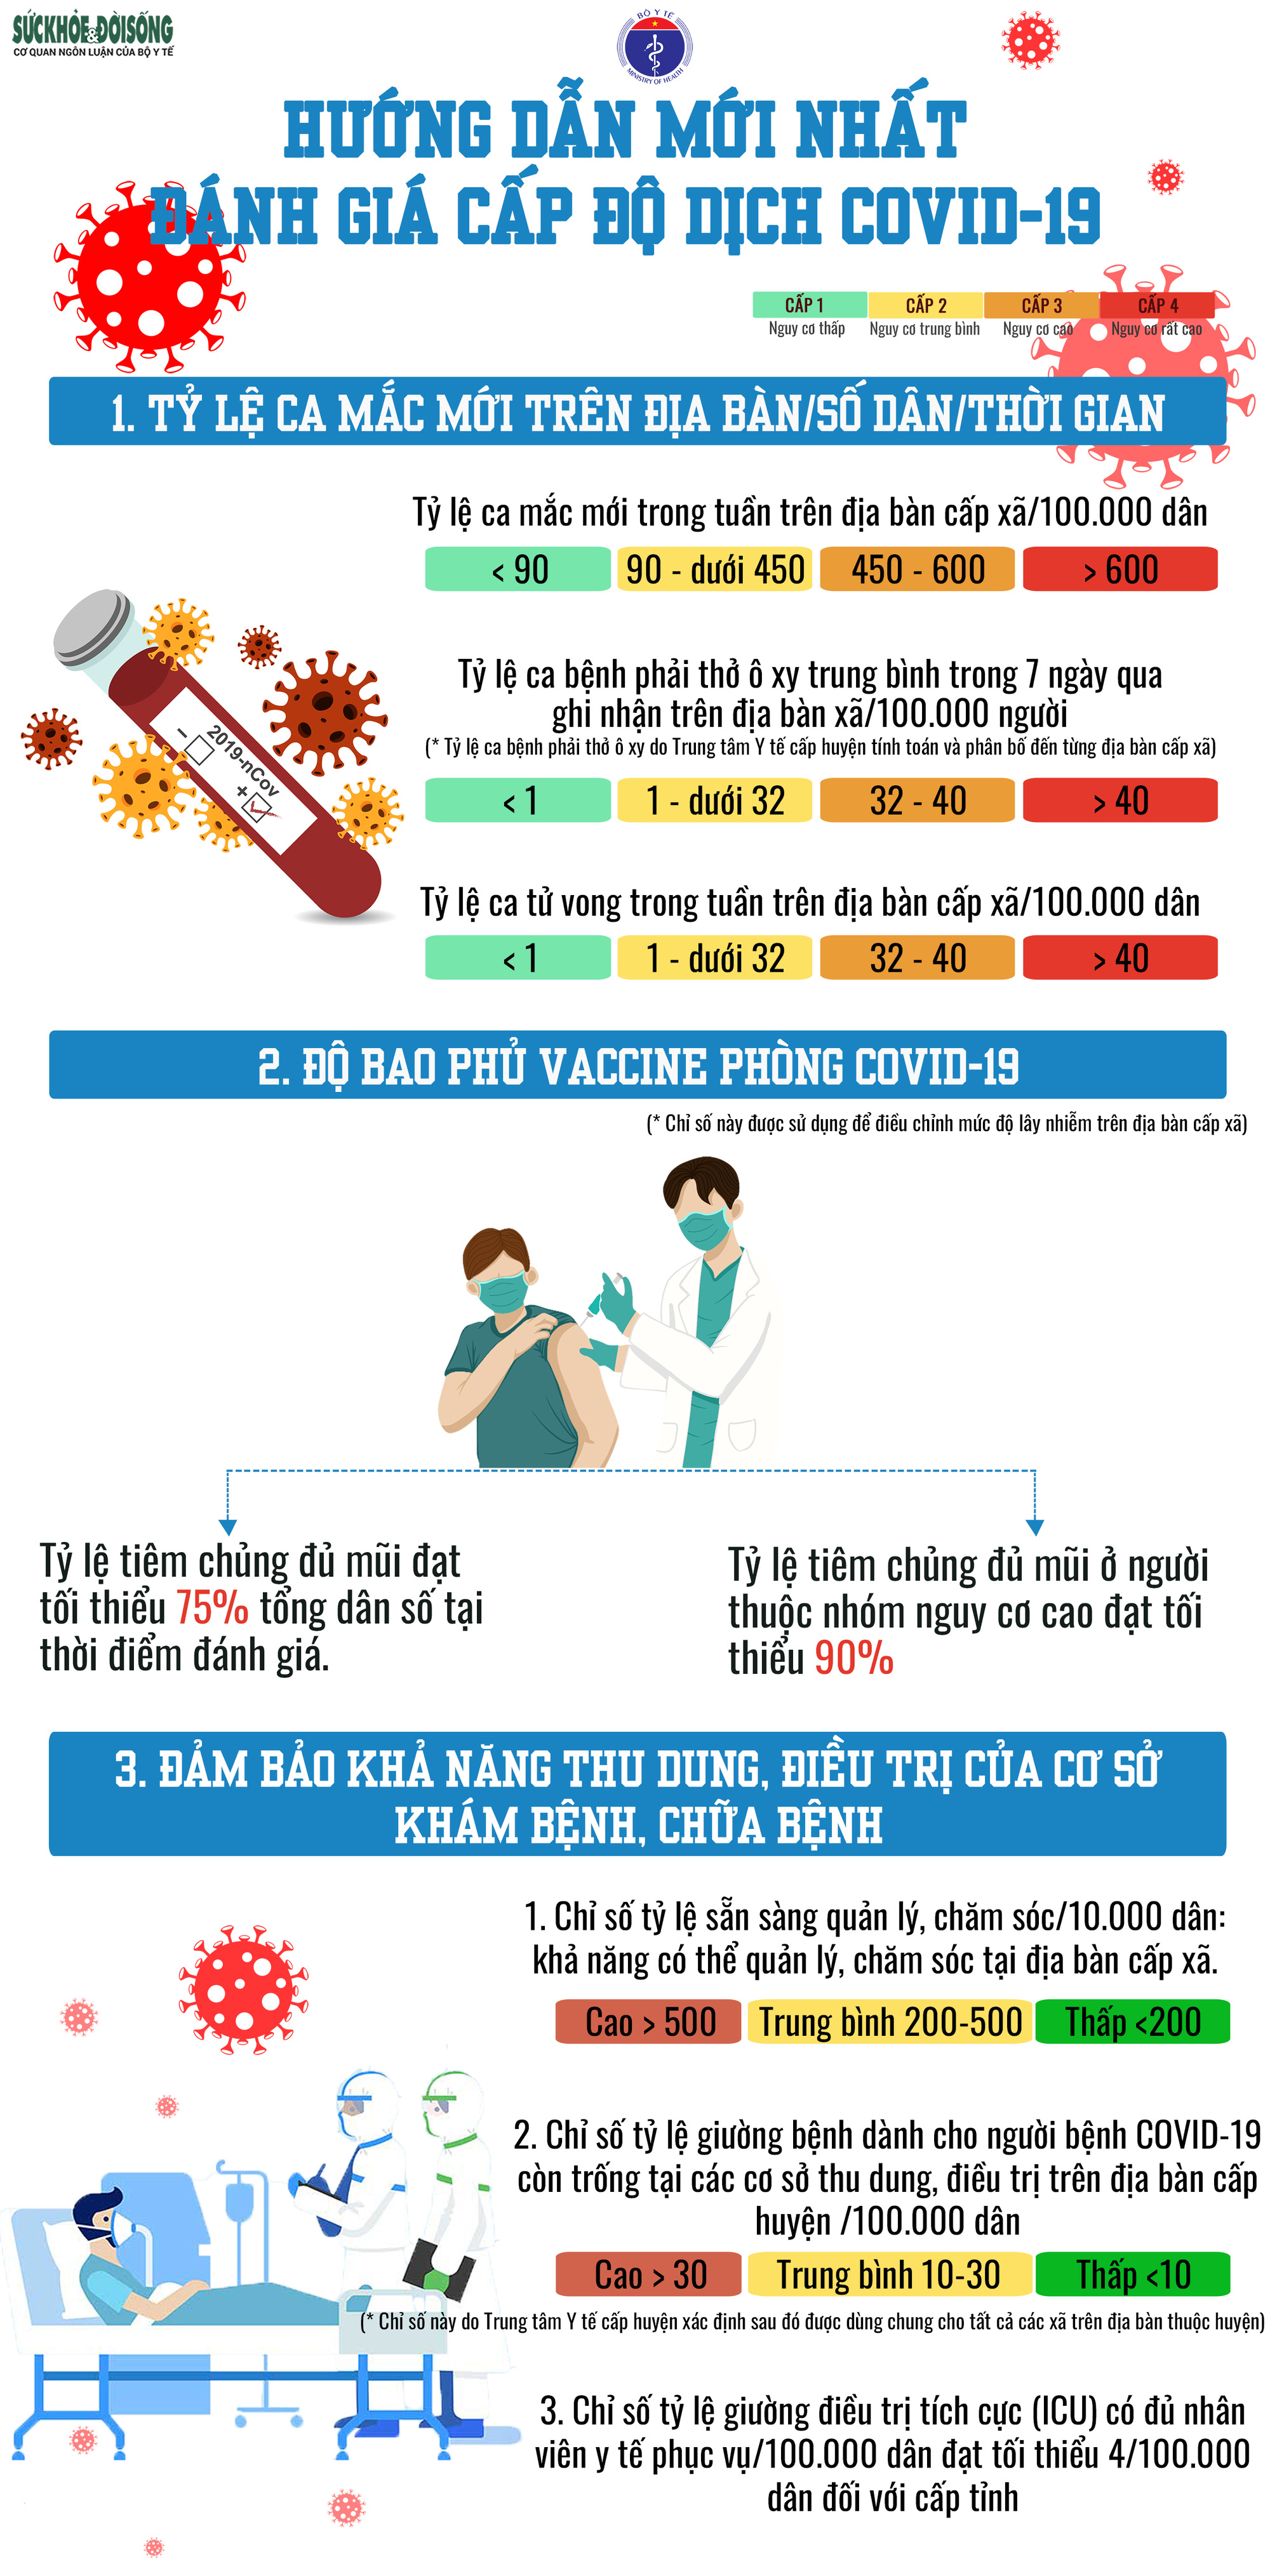 Cần biết: 3 bước để xác định cấp độ dịch COVID-19 theo hướng dẫn của Bộ Y tế - Ảnh 1.